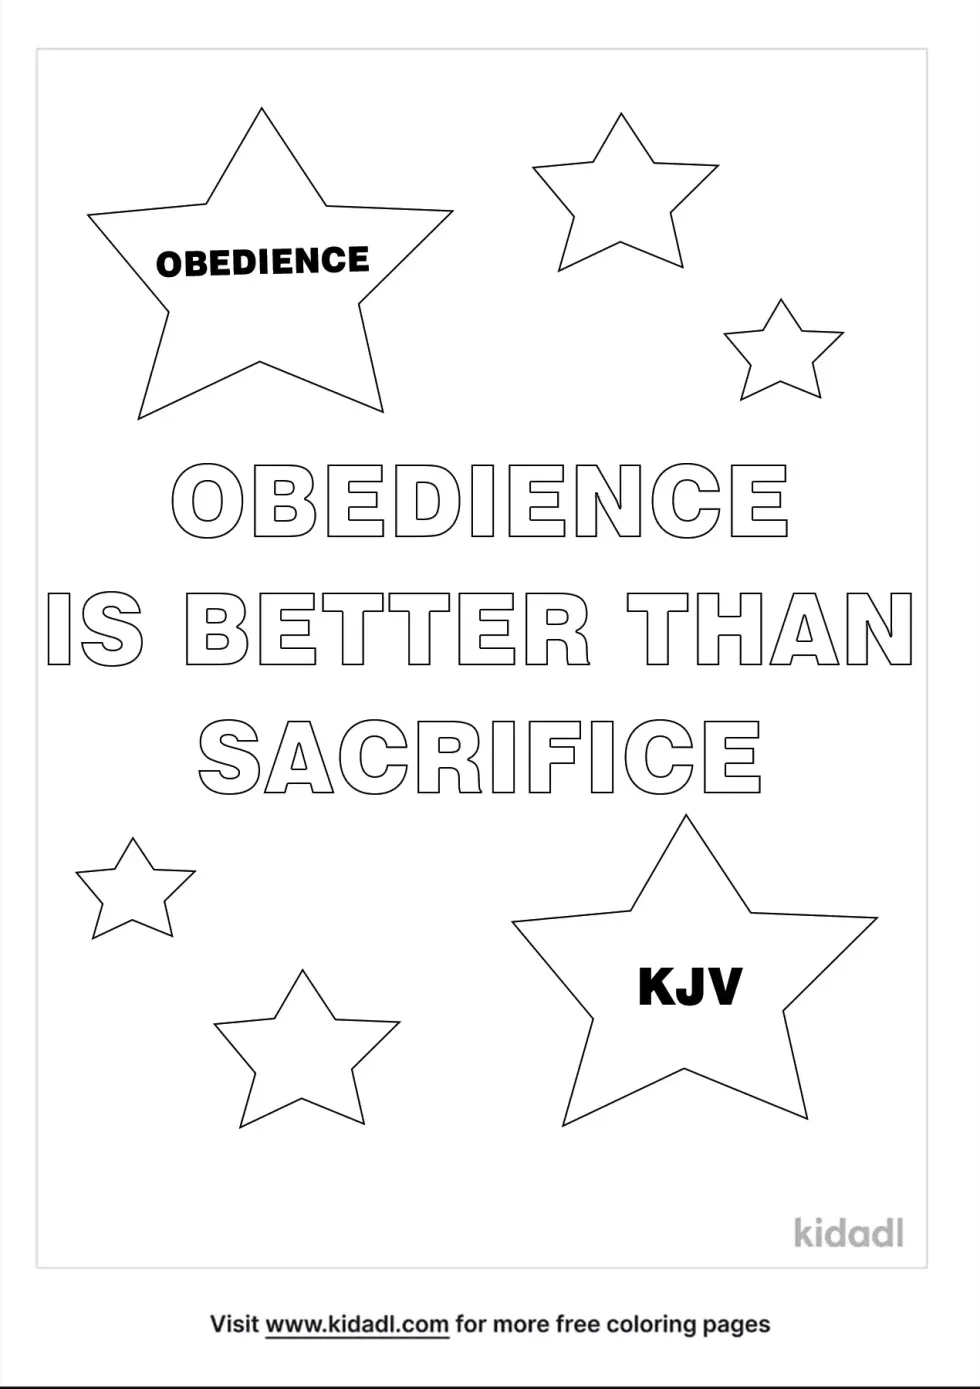 Obedience KJV